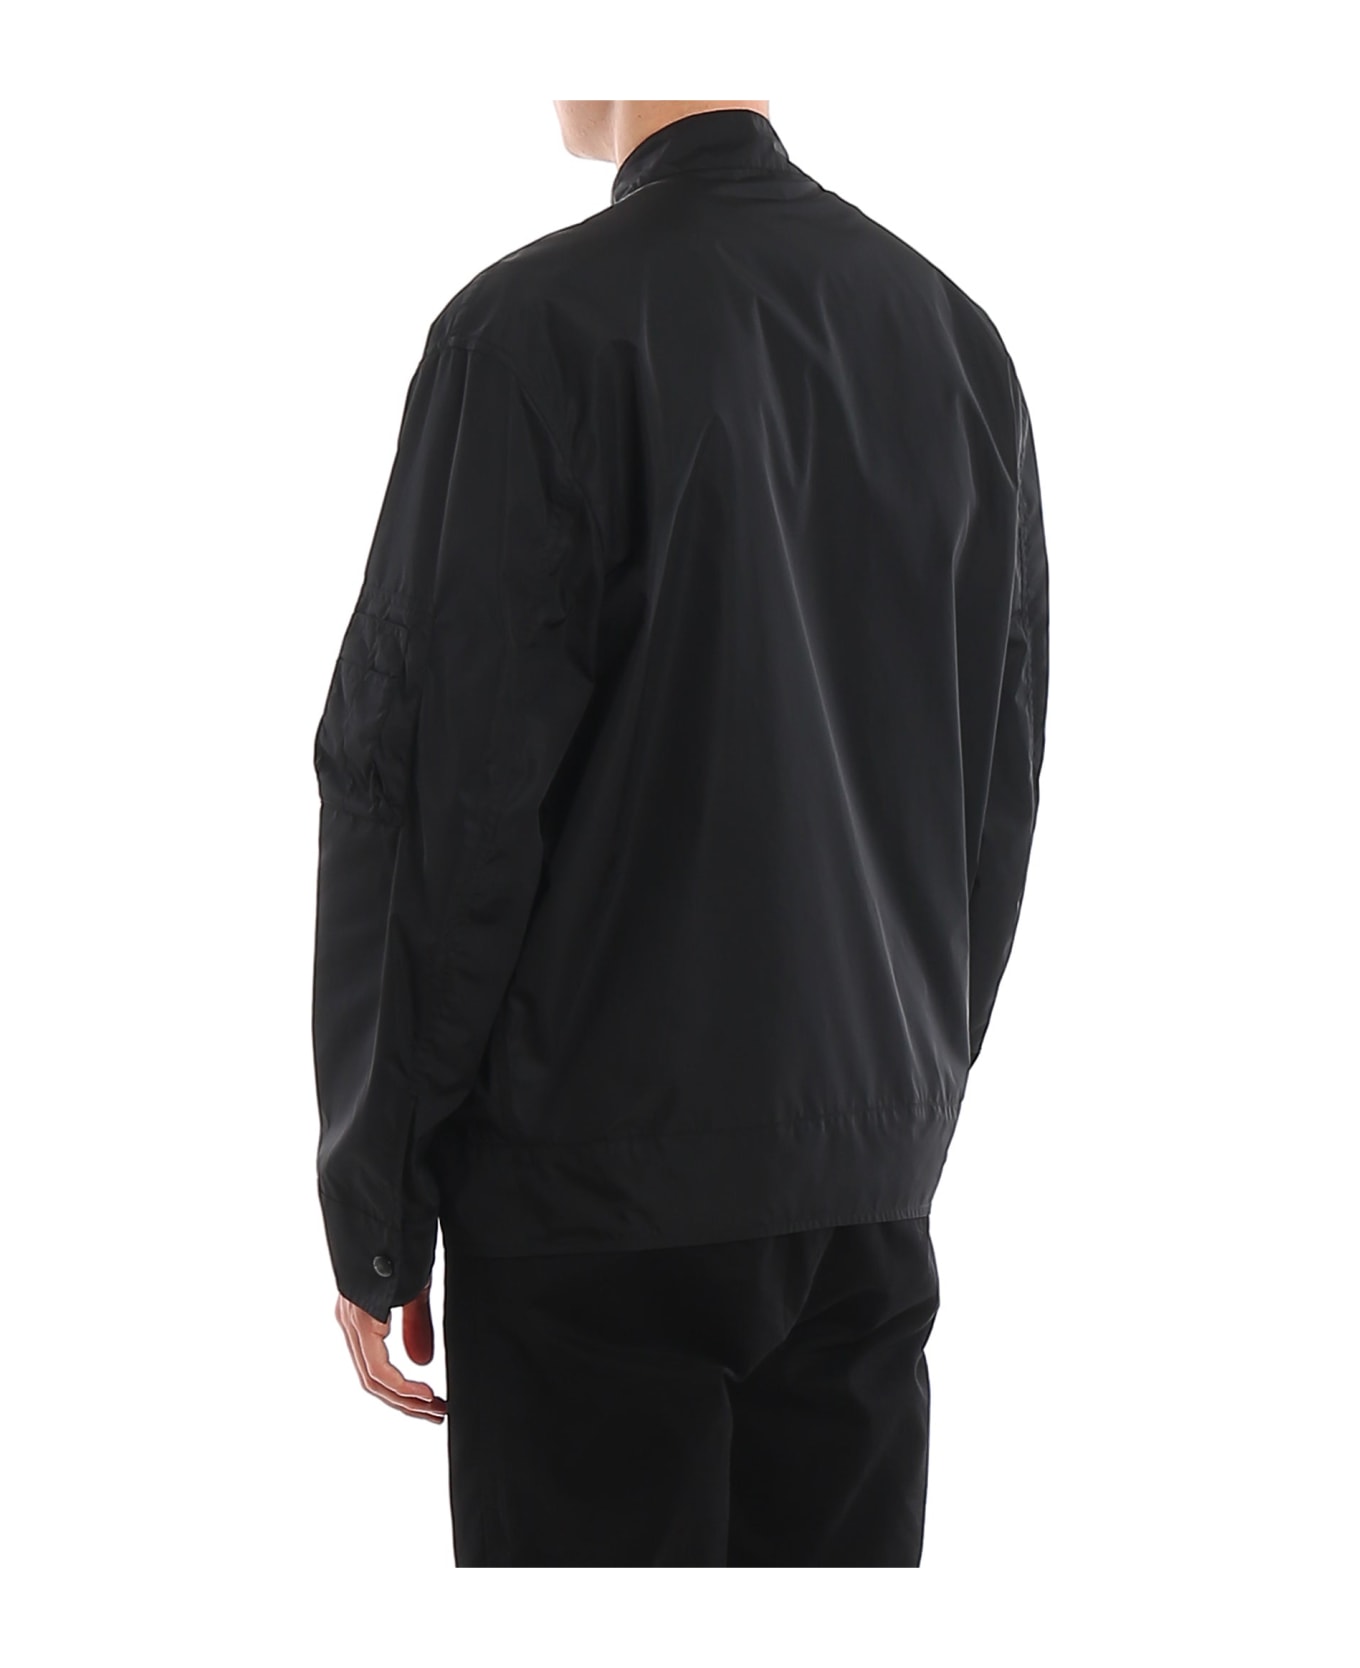 Valentino V Logo Dreamers Jacket - Black ジャケット